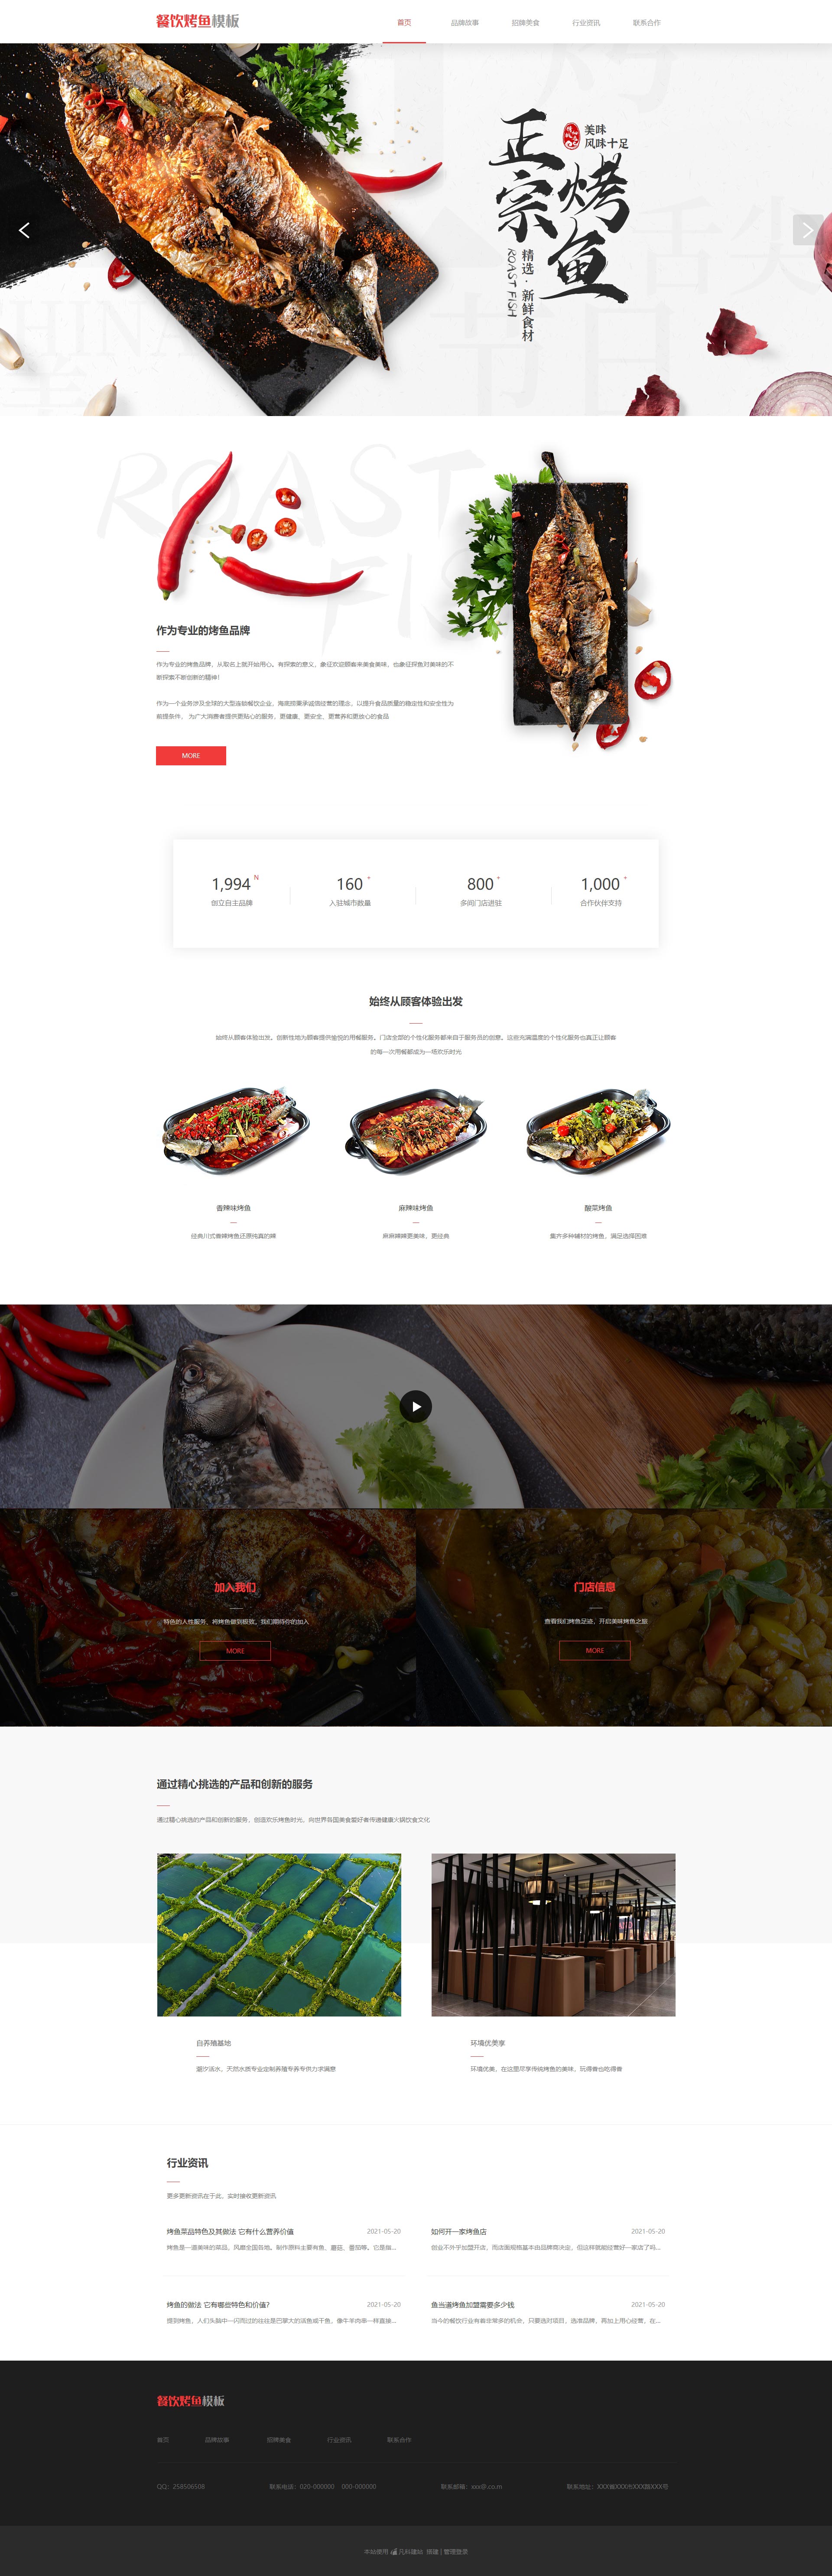 精选烤鱼餐厅网站模板